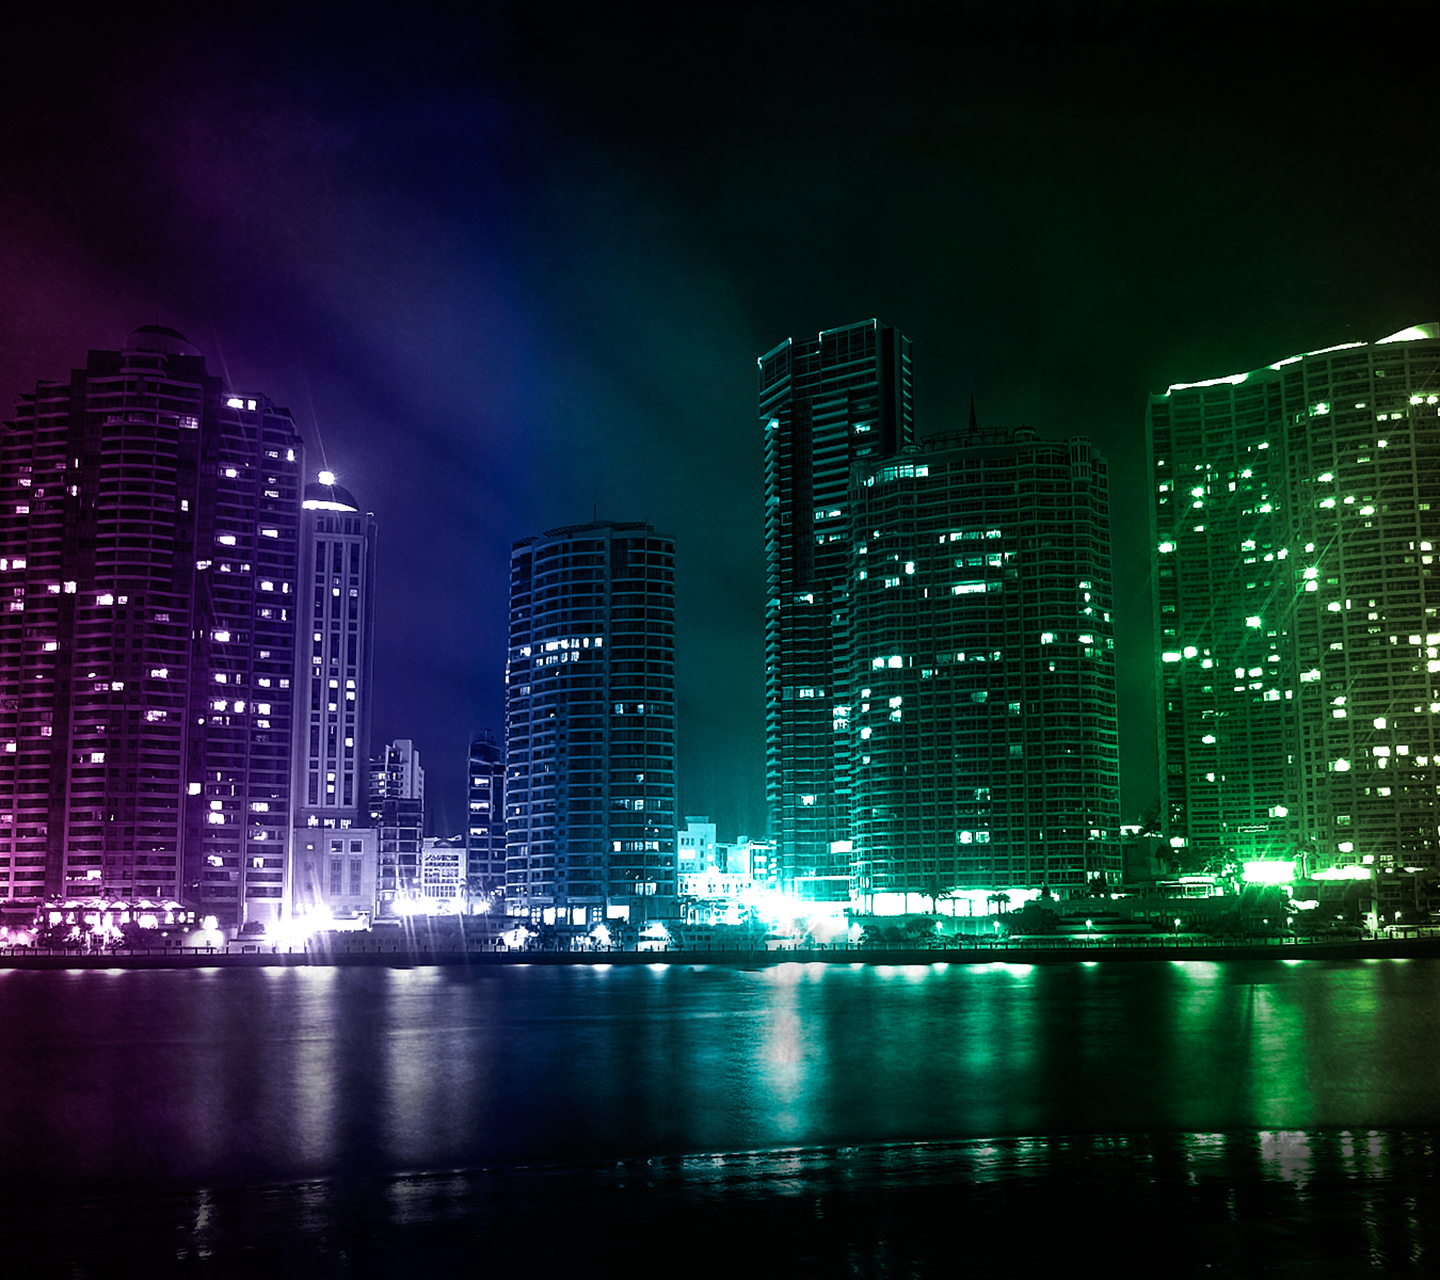 temas de fondo de pantalla de samsung,área metropolitana,paisaje urbano,ciudad,noche,reflexión